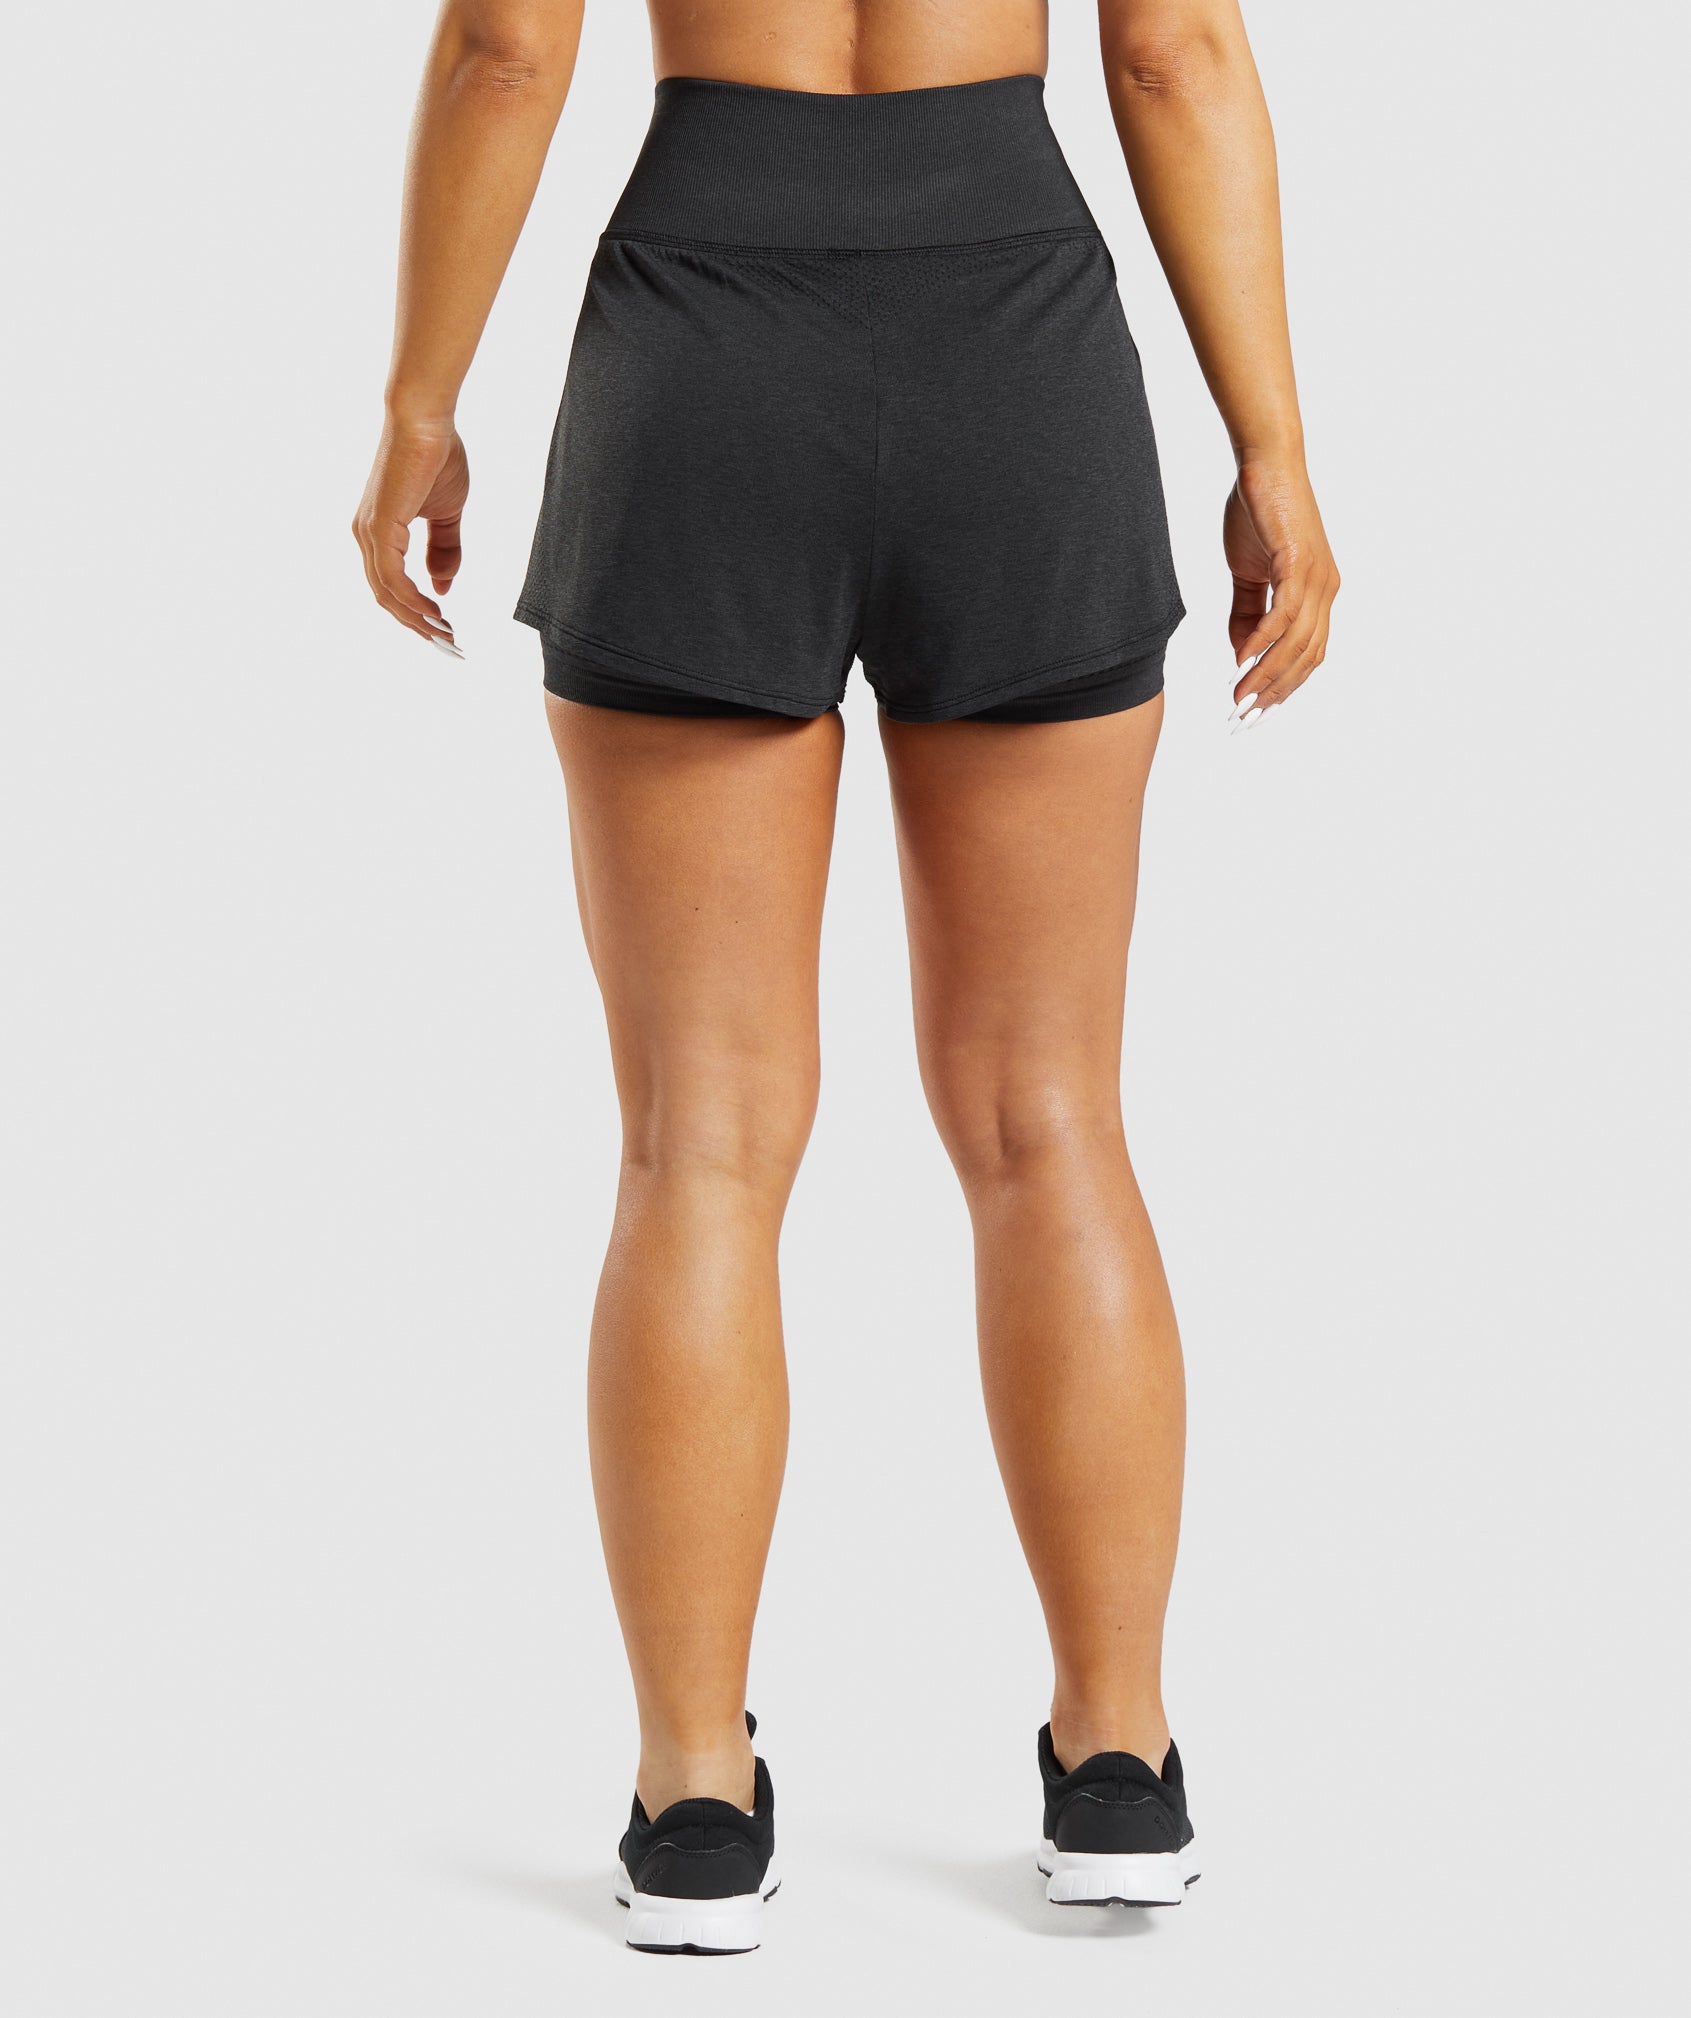 Vital Seamless 2.0 2-in-1 Shorts in Black Marl